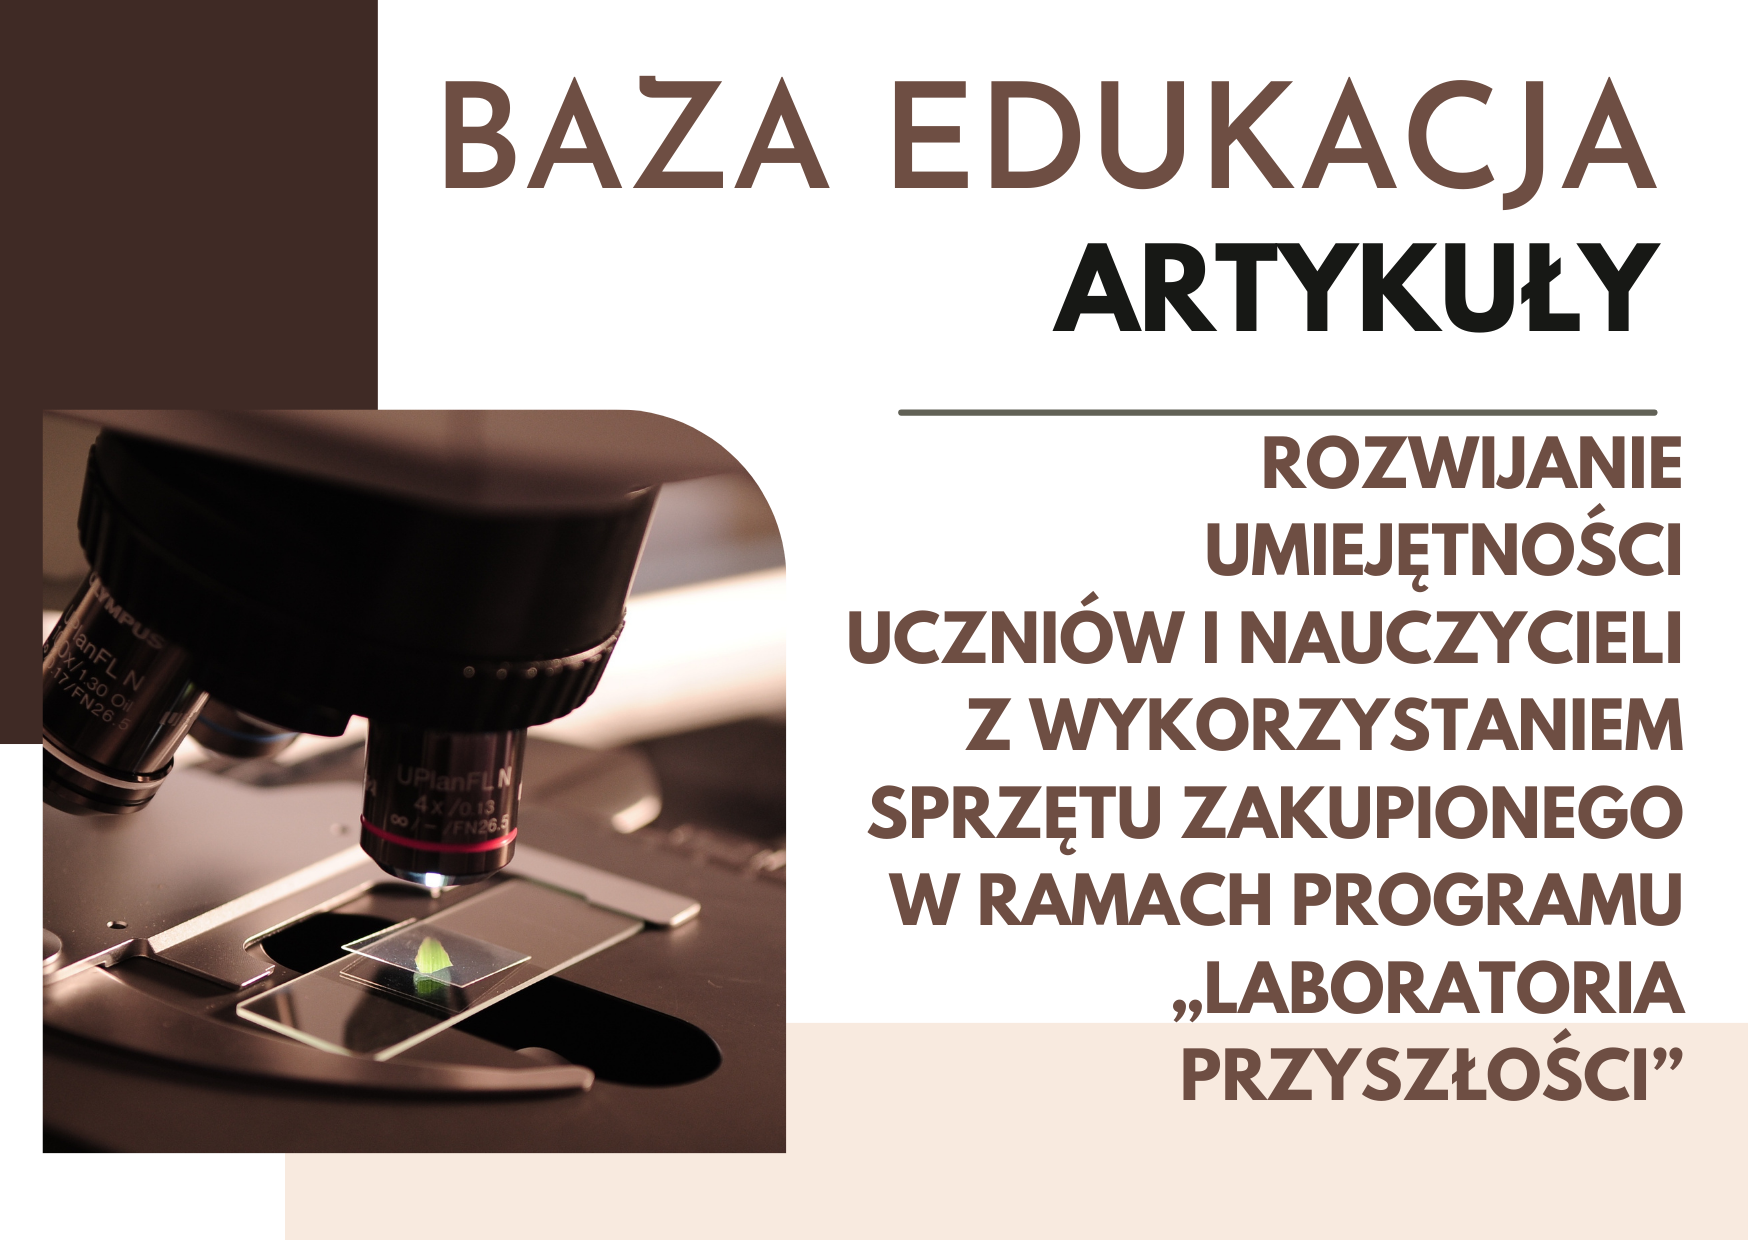 Baza Edukacja-Rozwijanie umiejętności uczniów i nauczycieli - „Laboratoria przyszłości”.